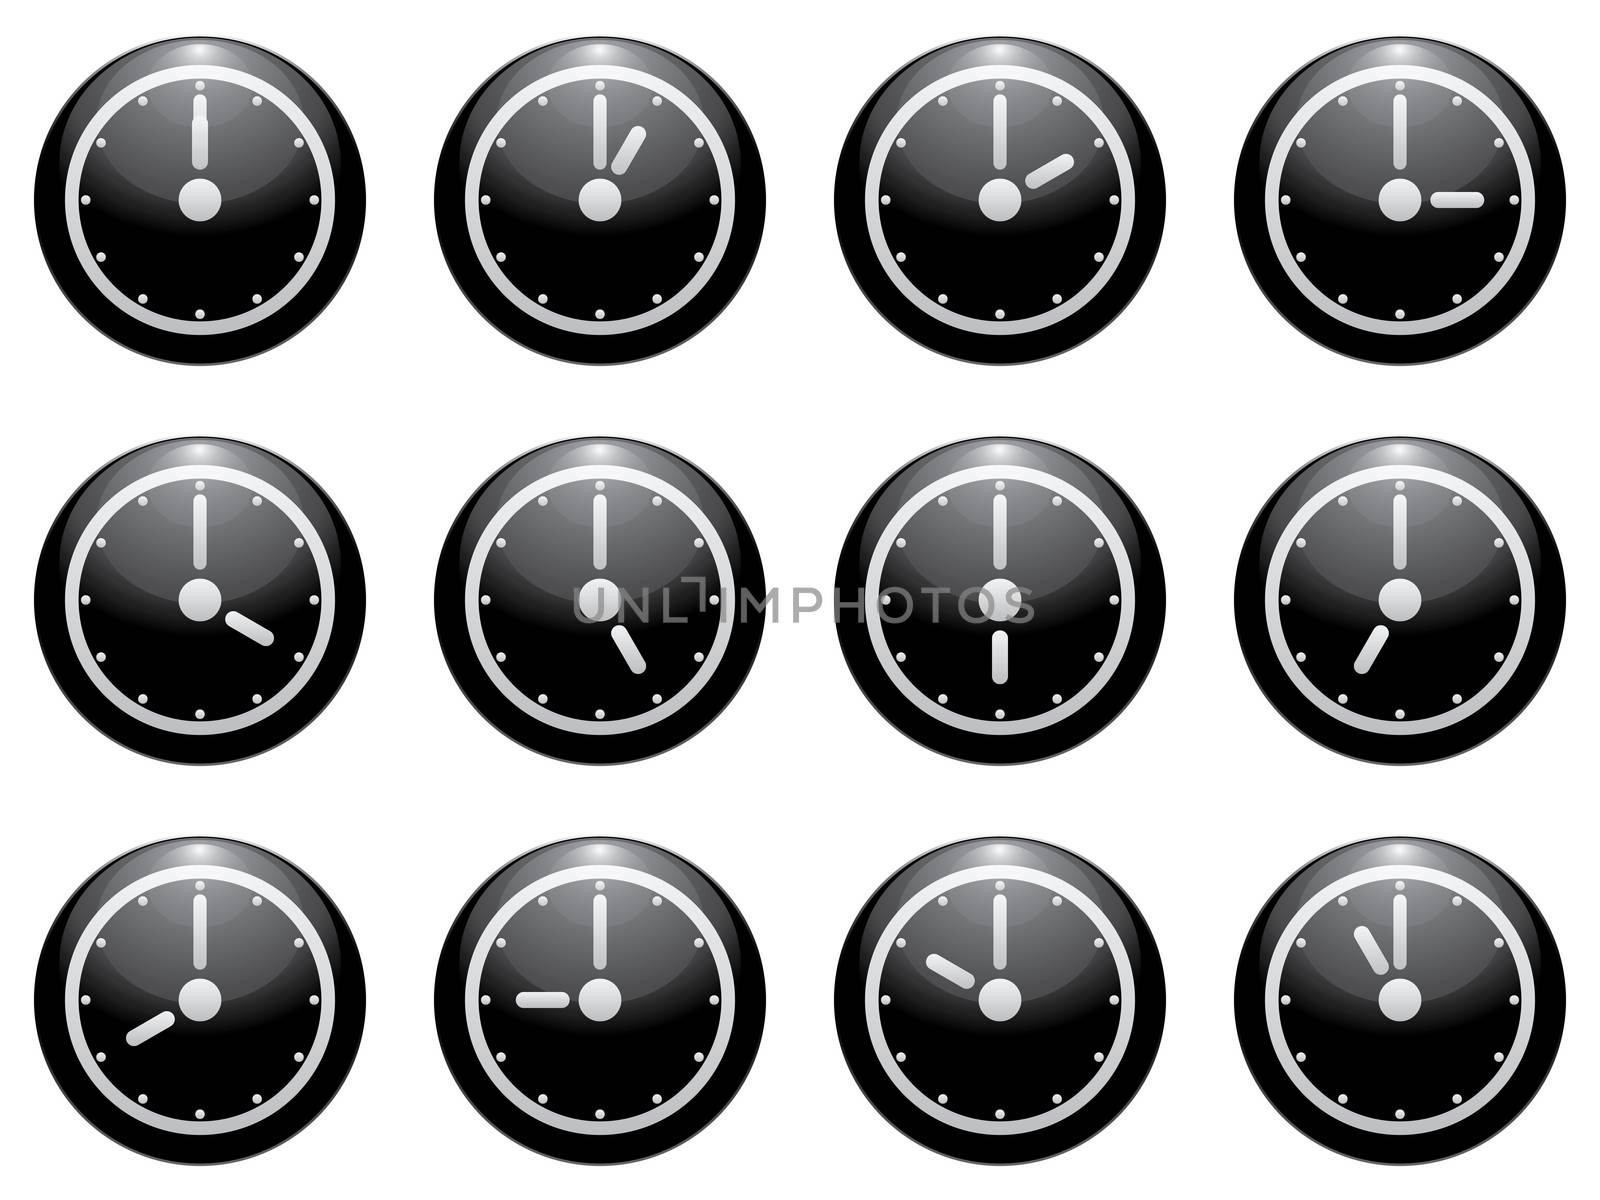 clock symbol set white on black isolated on white background.